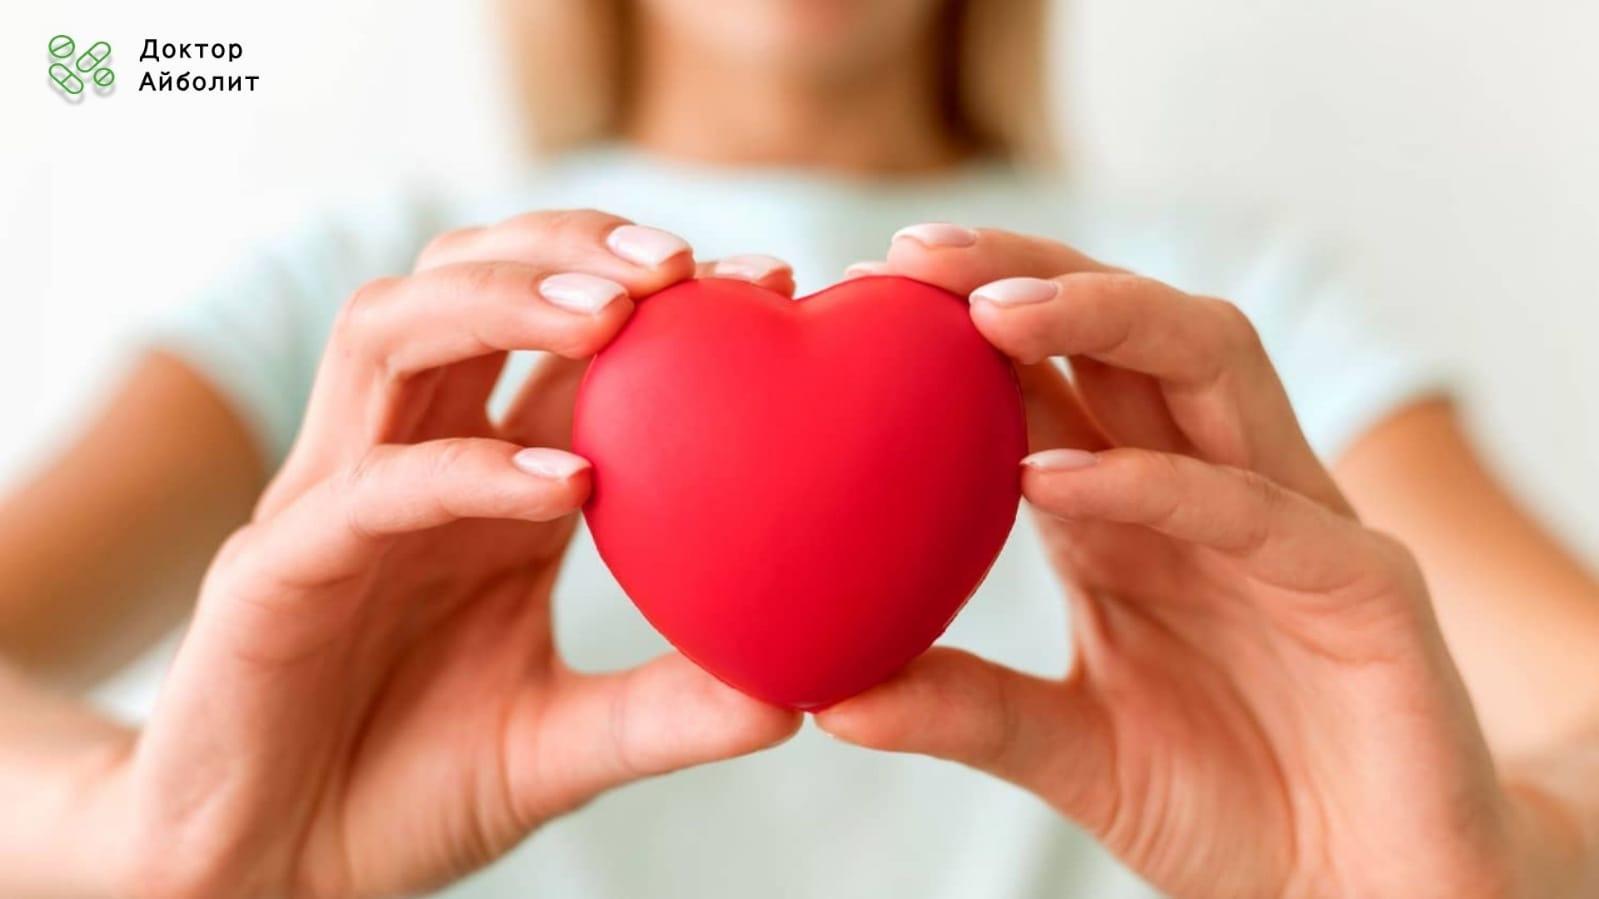 Thumbnail for Здоровые привычки сердца: изменения образа жизни для здоровья сердечно-сосудистой системы